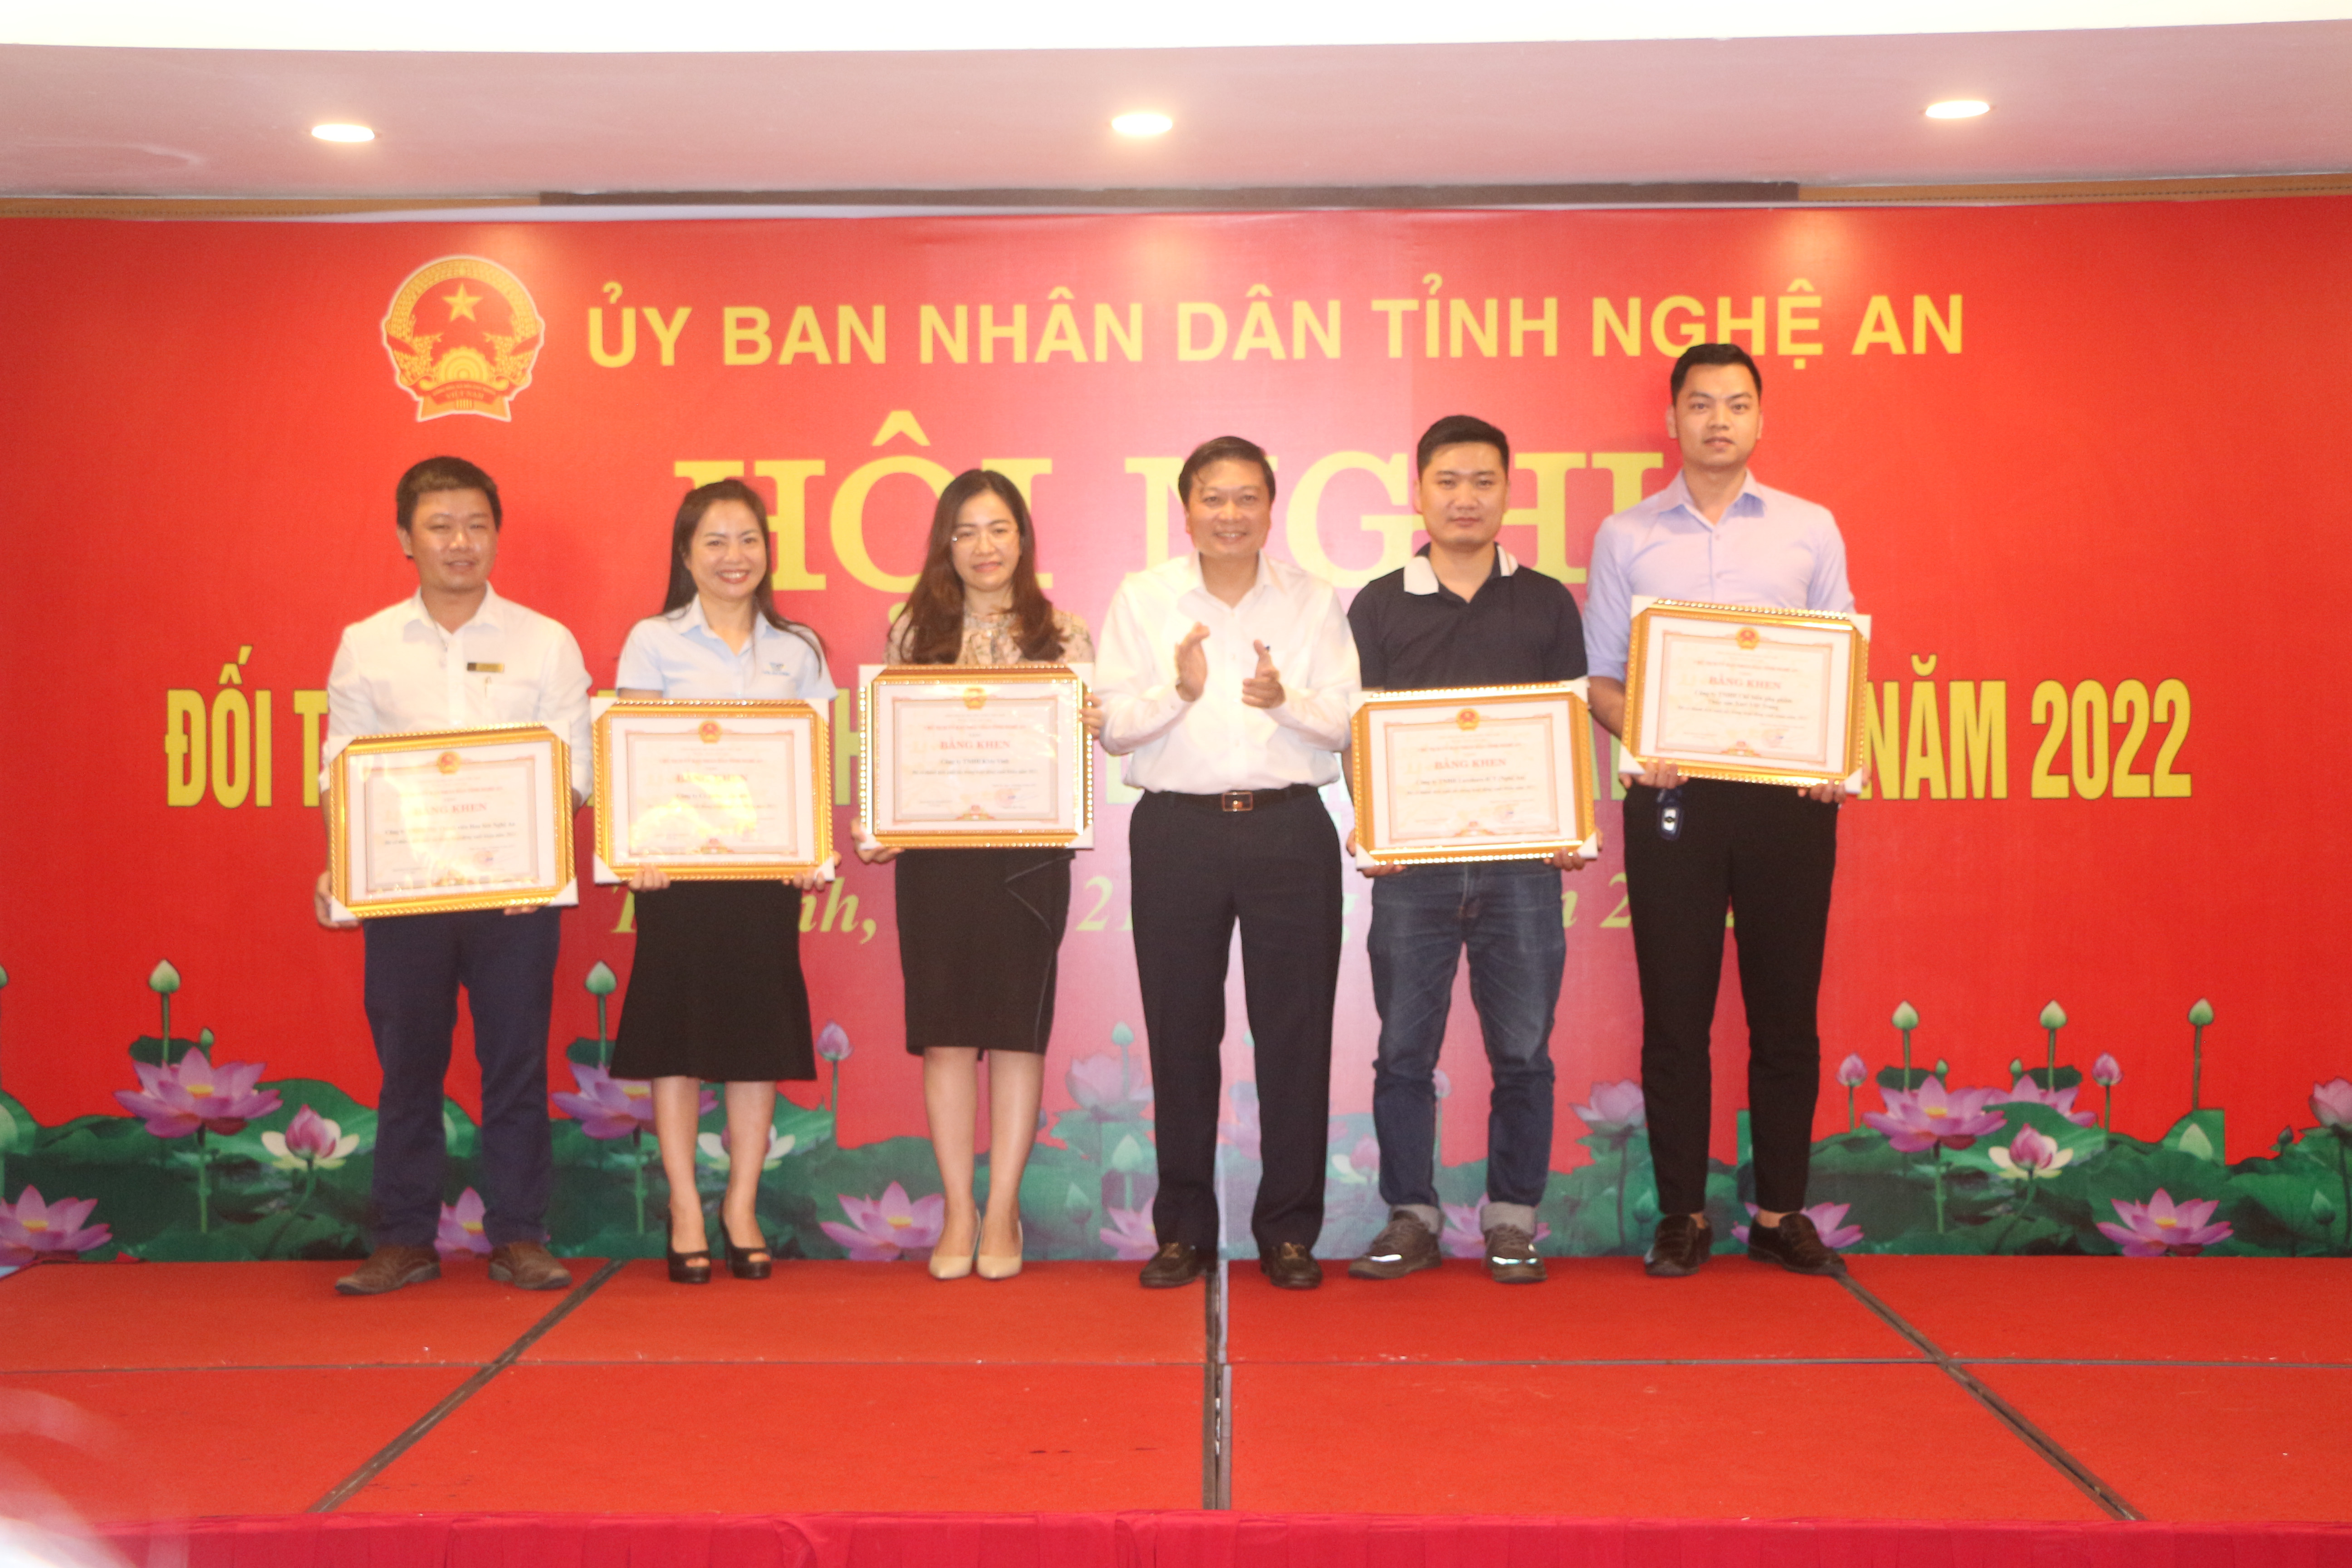 Phó chủ tịch UBND tỉnh Lê Hồng Vinh trao bằng khen cho 5 doanh nghiệp có thành tích xuất sắc trong hoạt động xuất khẩu. Ảnh Thu Huyền